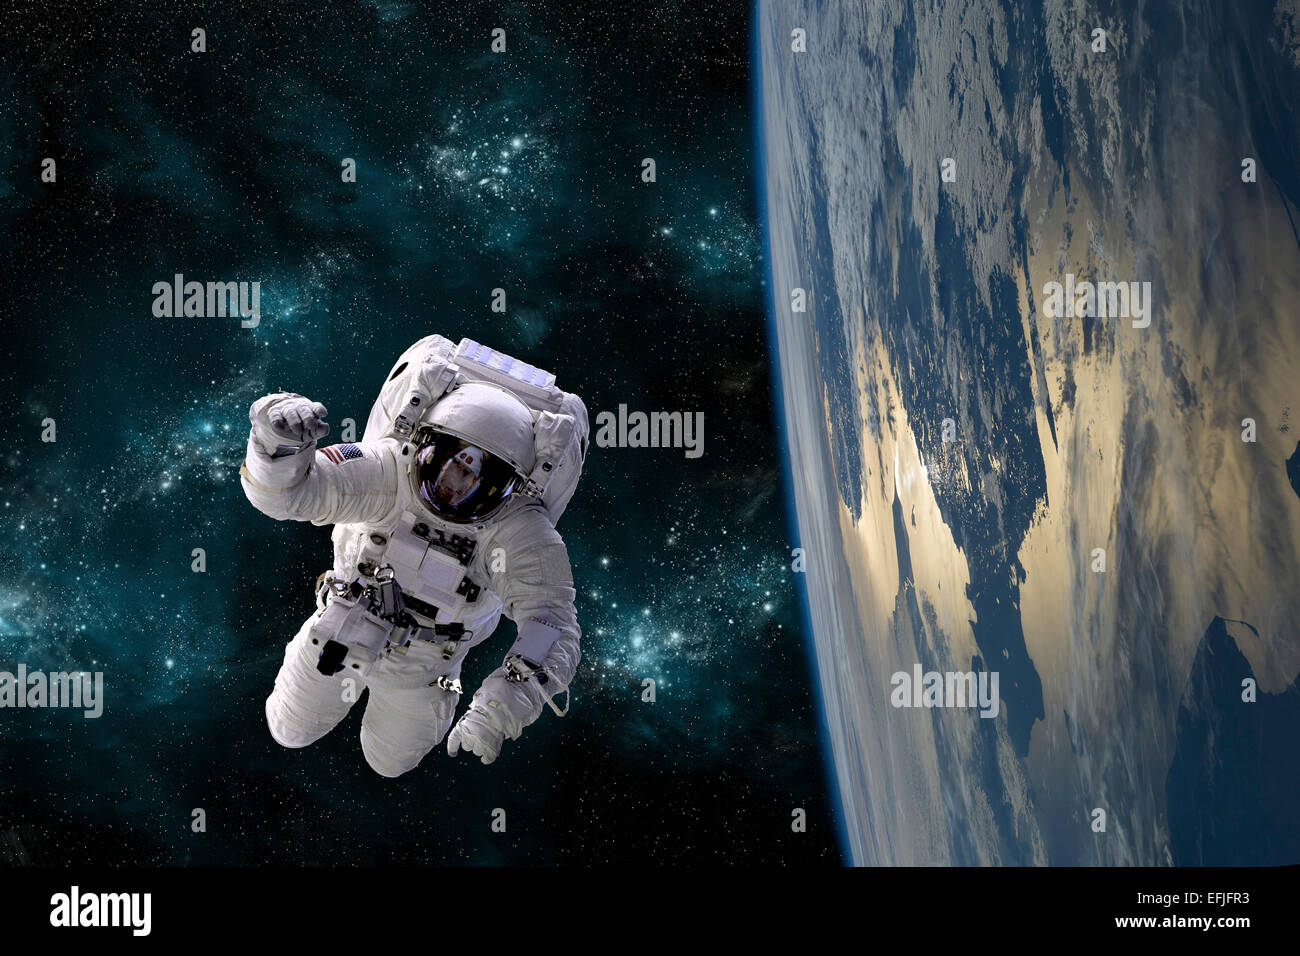 Un artiste pour l'inscription d'un astronaute flottant dans l'espace tout en gravitant autour d'une grande planète Terre-like. Banque D'Images